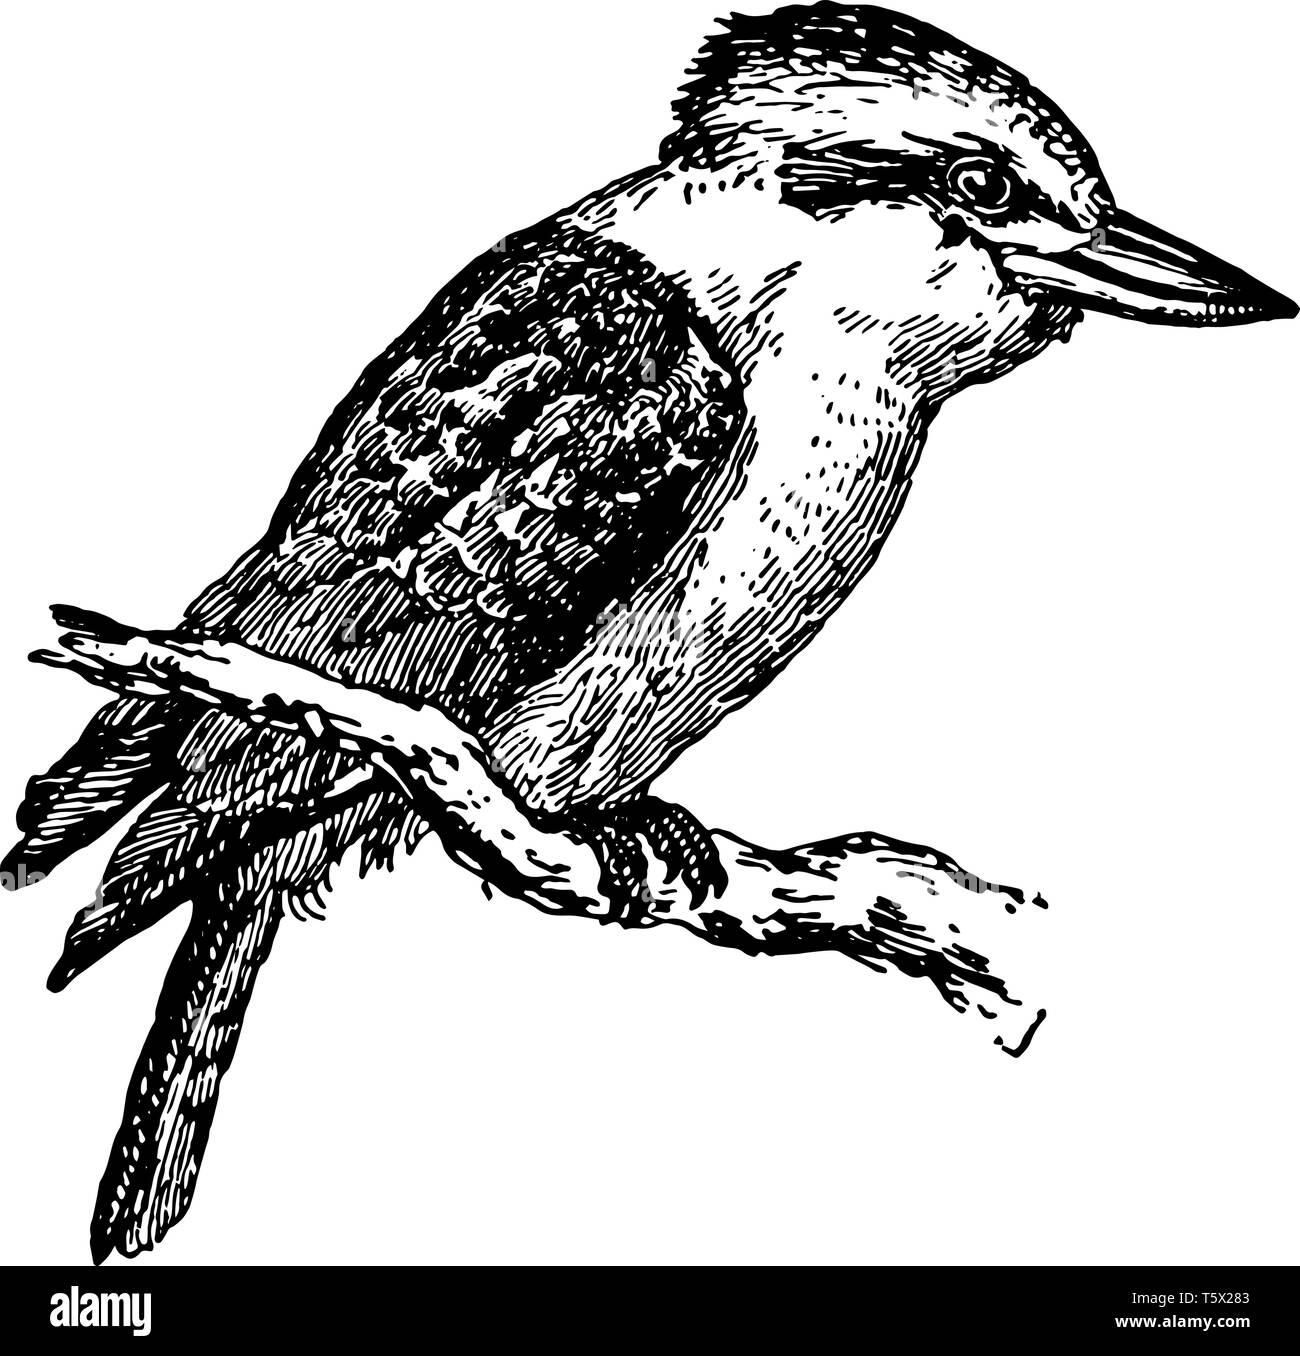 Dacelo gigas est un très grand kingfisher trouvés en Australie, vintage dessin ou gravure illustration. Illustration de Vecteur